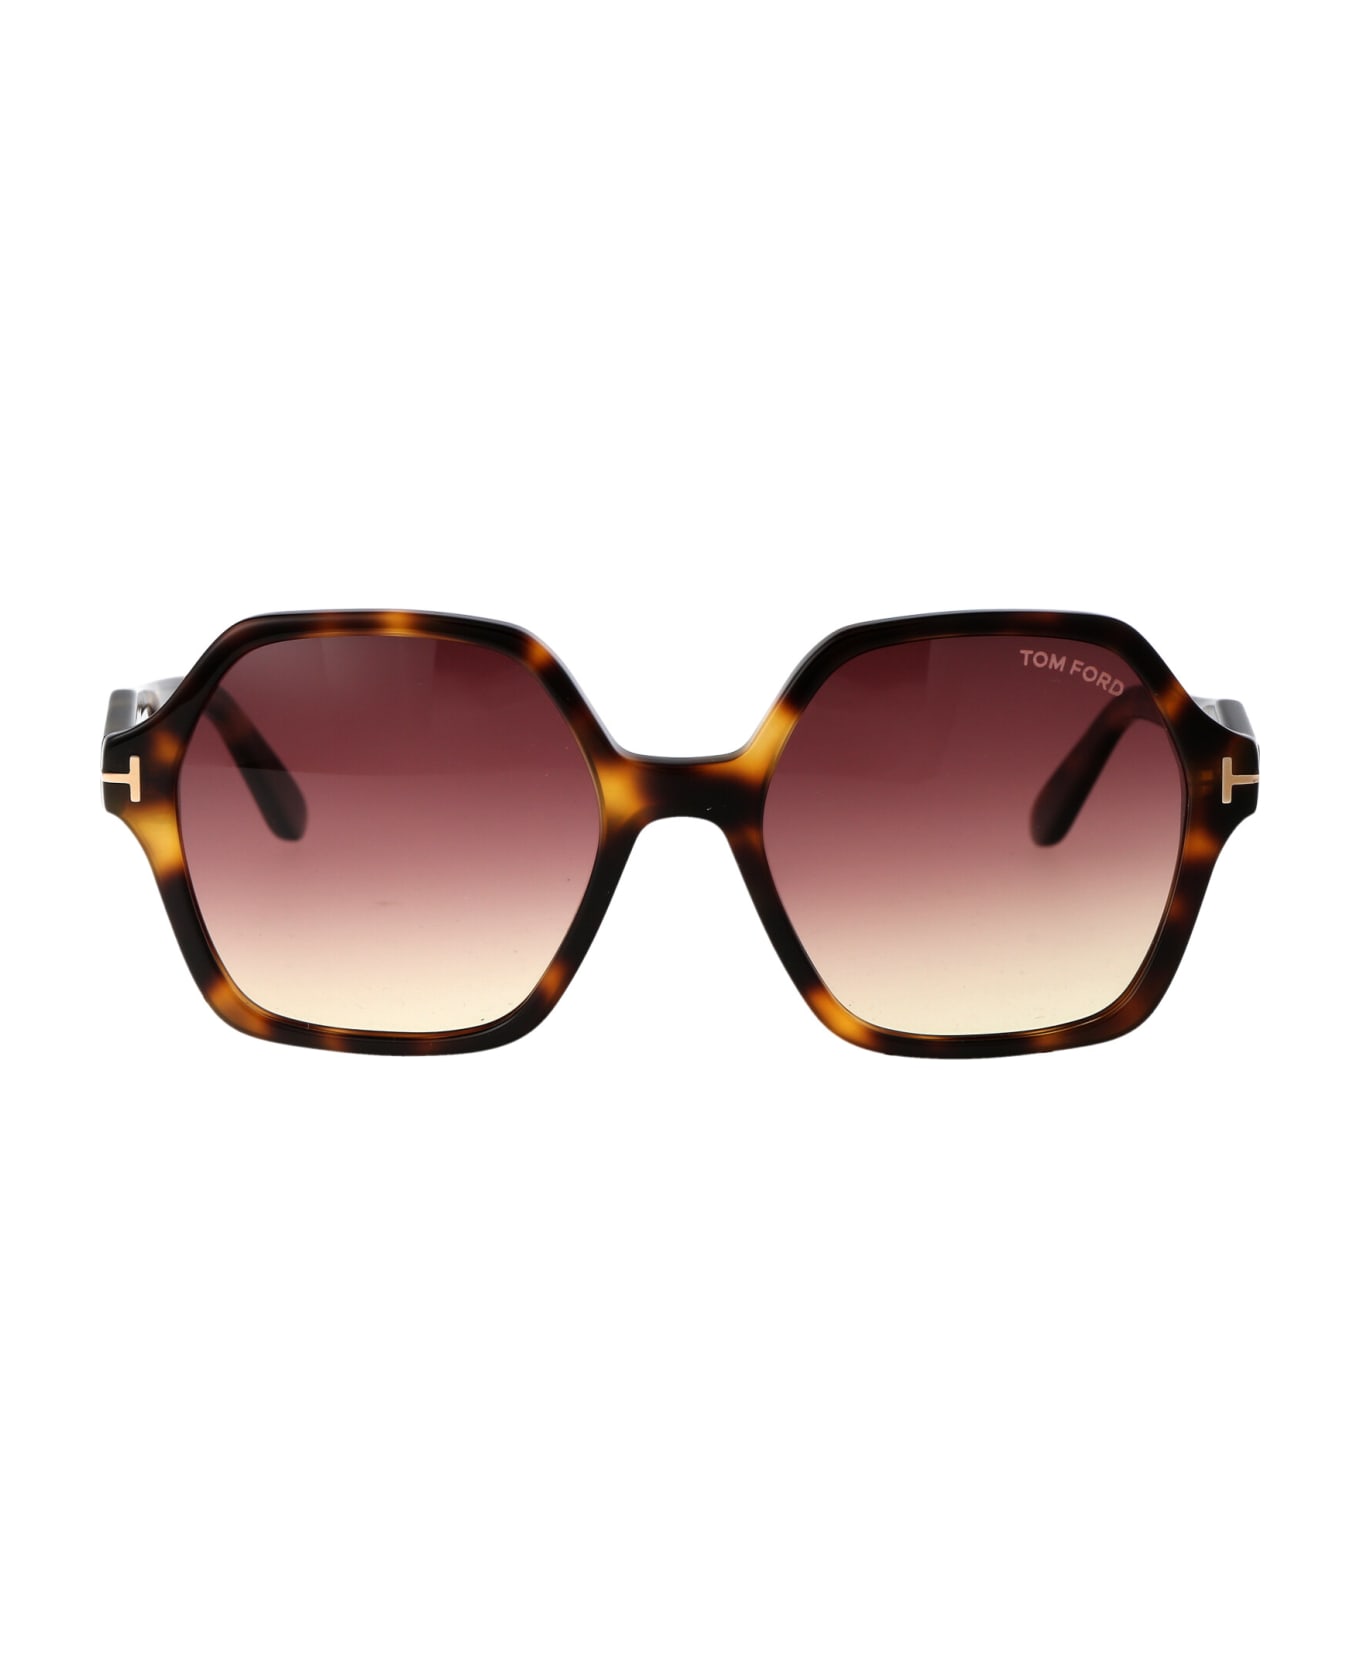 Tom Ford Eyewear Romy Sunglasses - 53Z Avana Bionda /  Specchiato